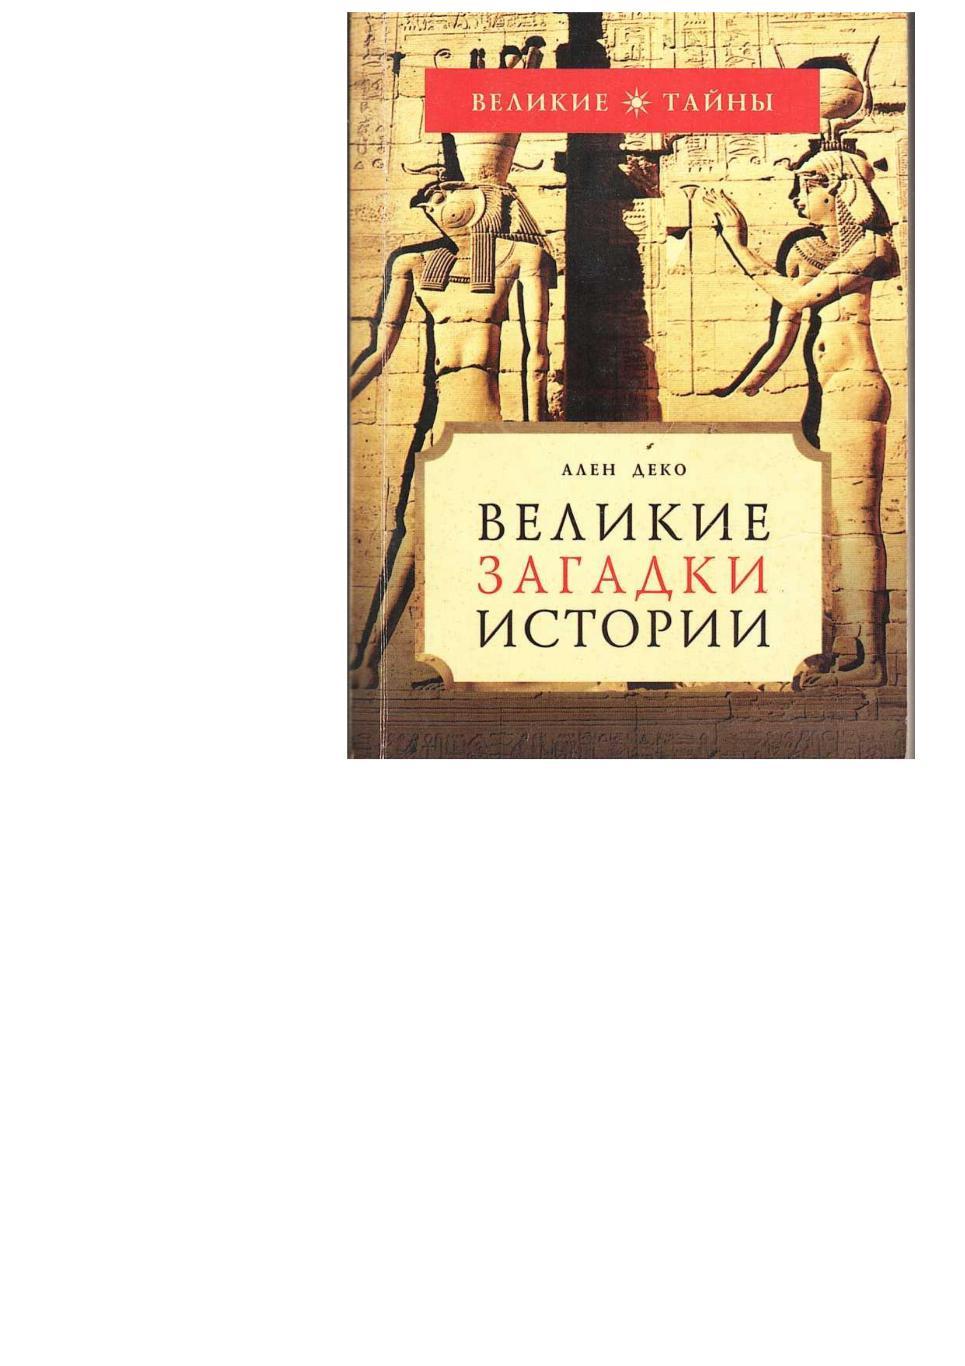 Деко А. Великие загадки истории. – М., 2006. – 480 с. (Великие тайны).